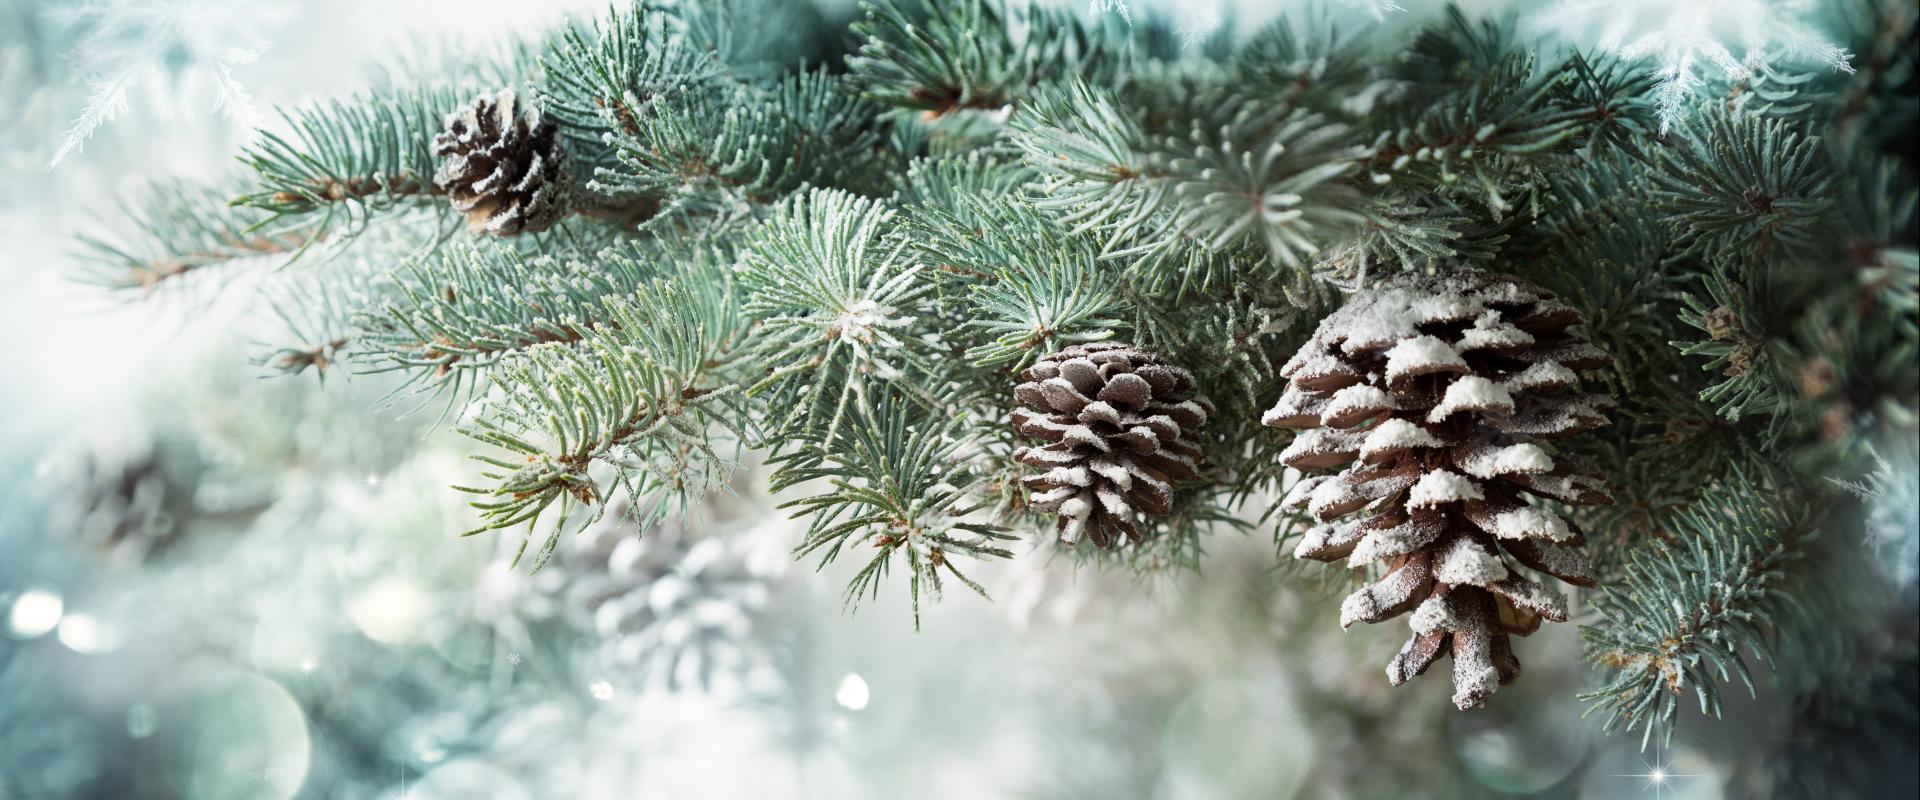 canghennau Nadolig ariannaidd a chonau pinwydd / silvery Christmas branches and pine cones